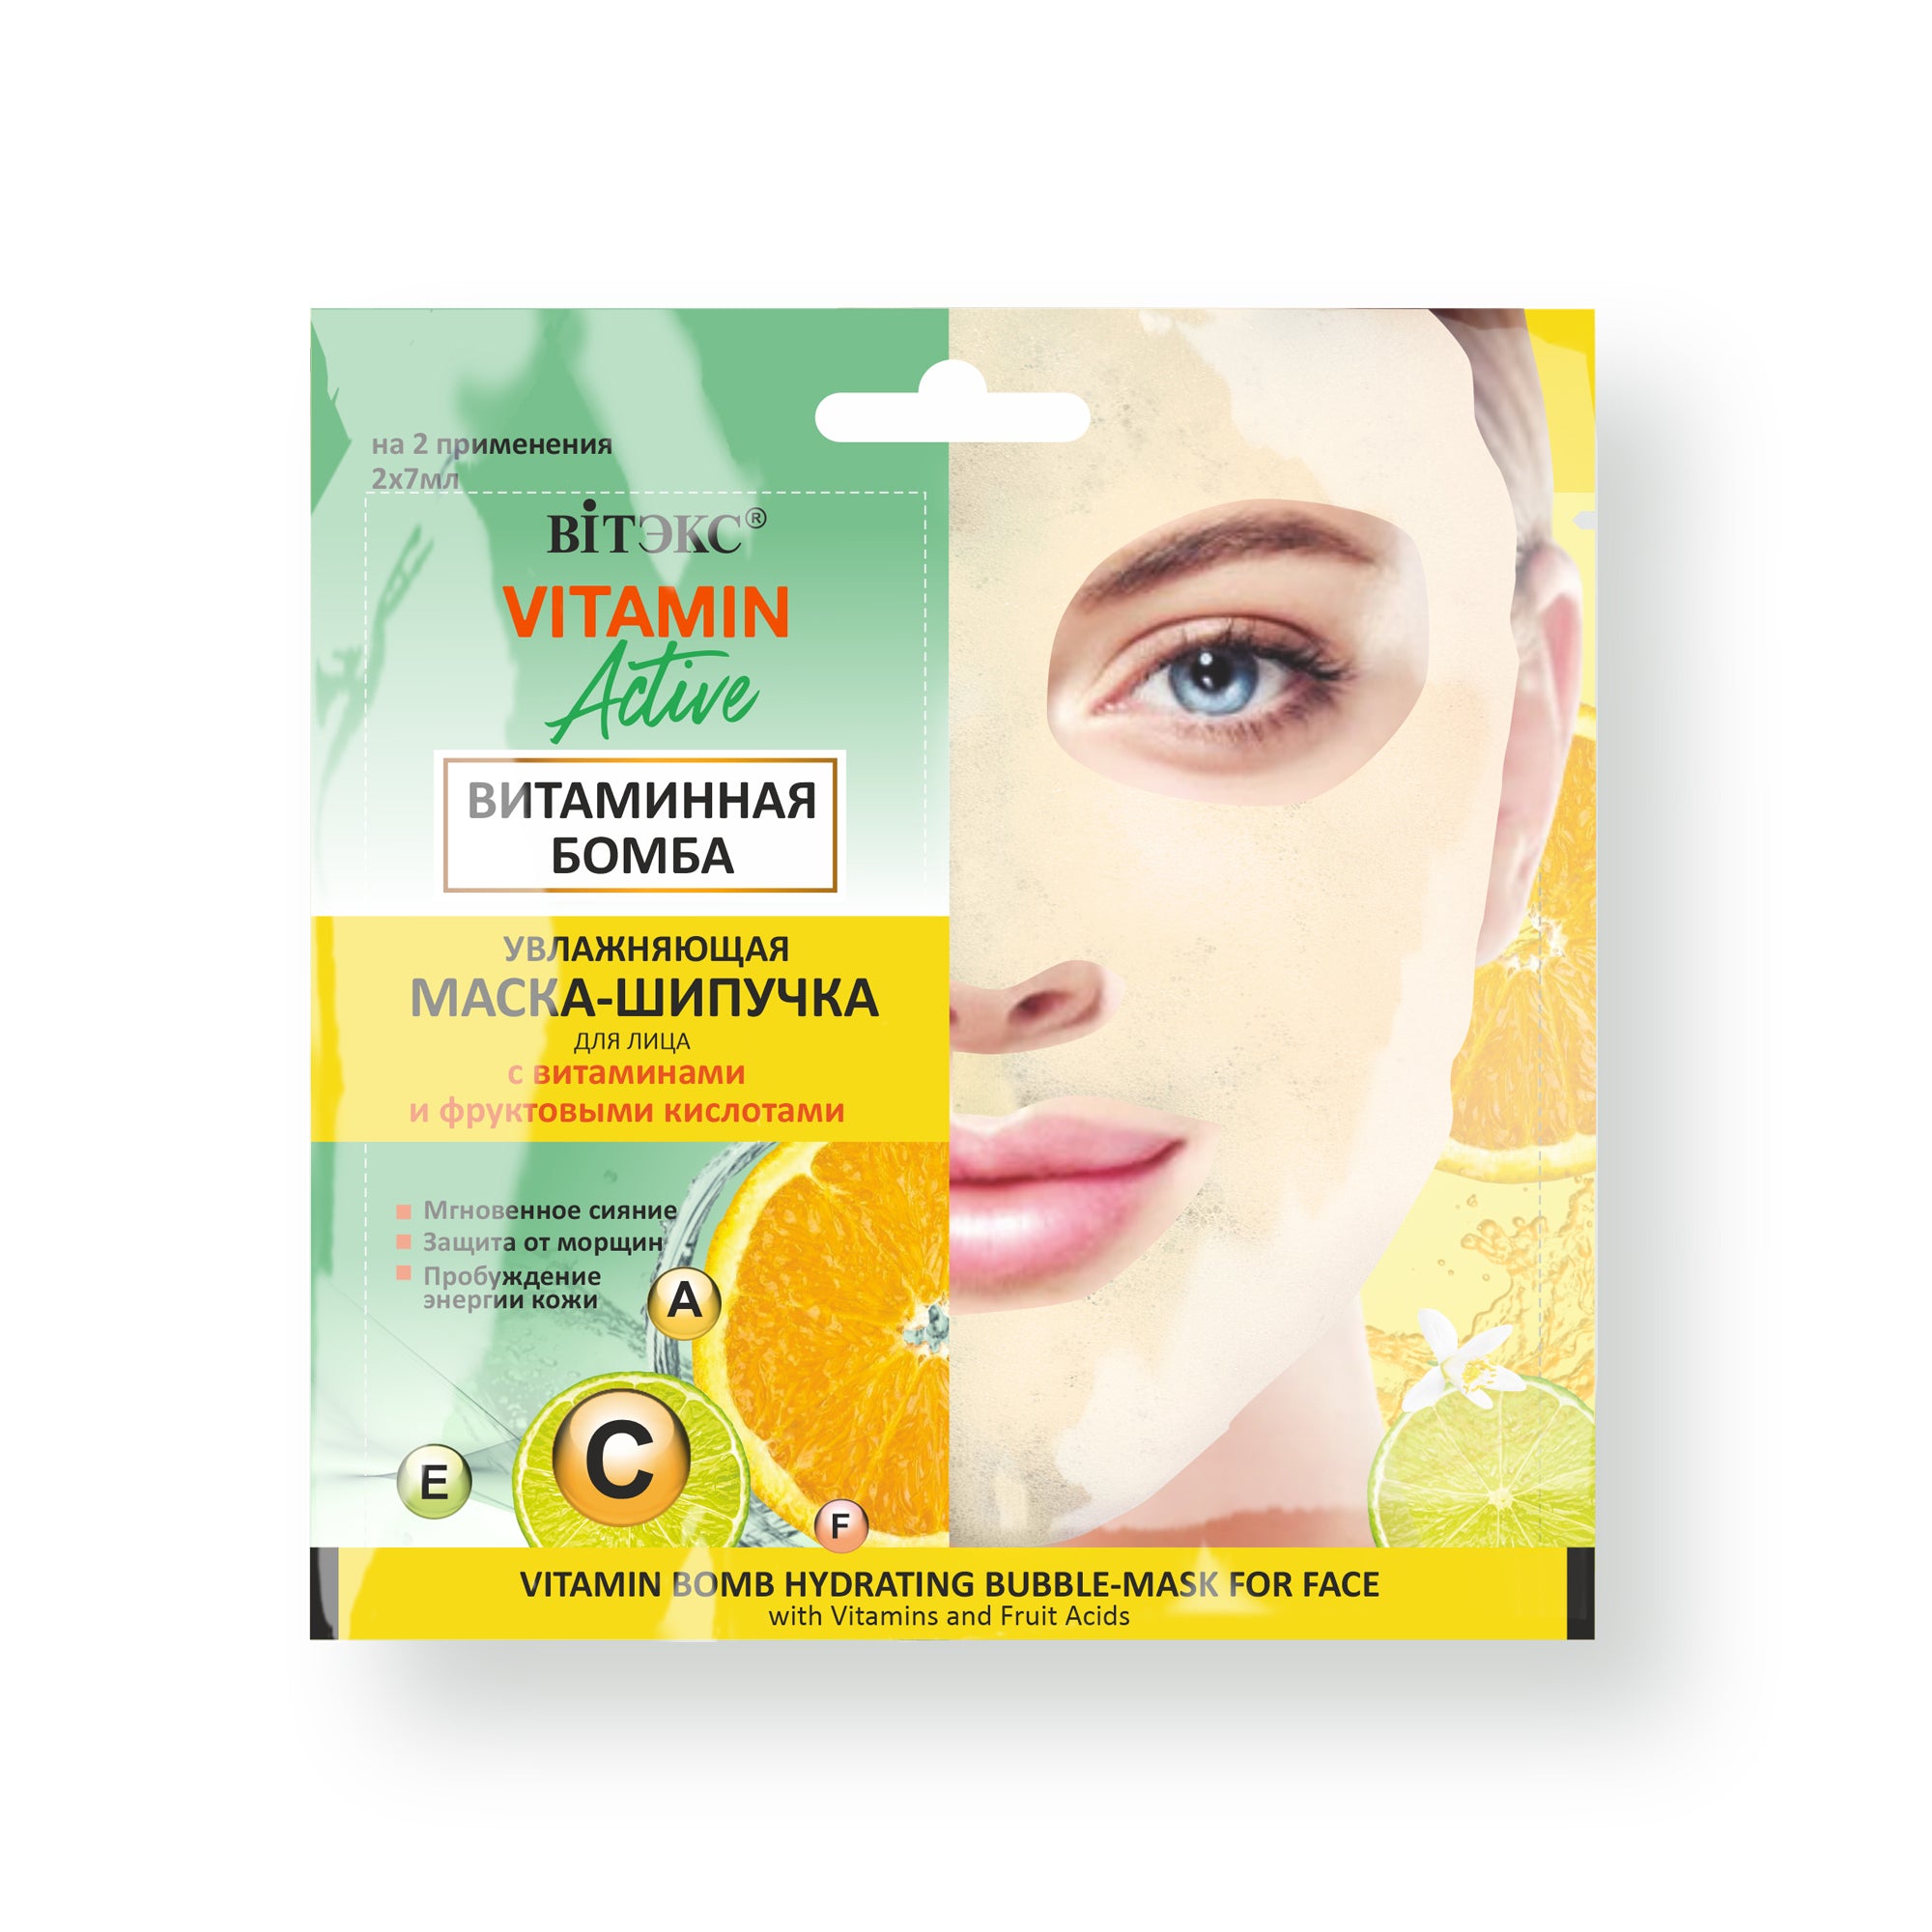 Vitamin Active Nemlendirici Köpük Yüz Maskesi (2 Adet x 7 ml) | Auraline Cosmetics